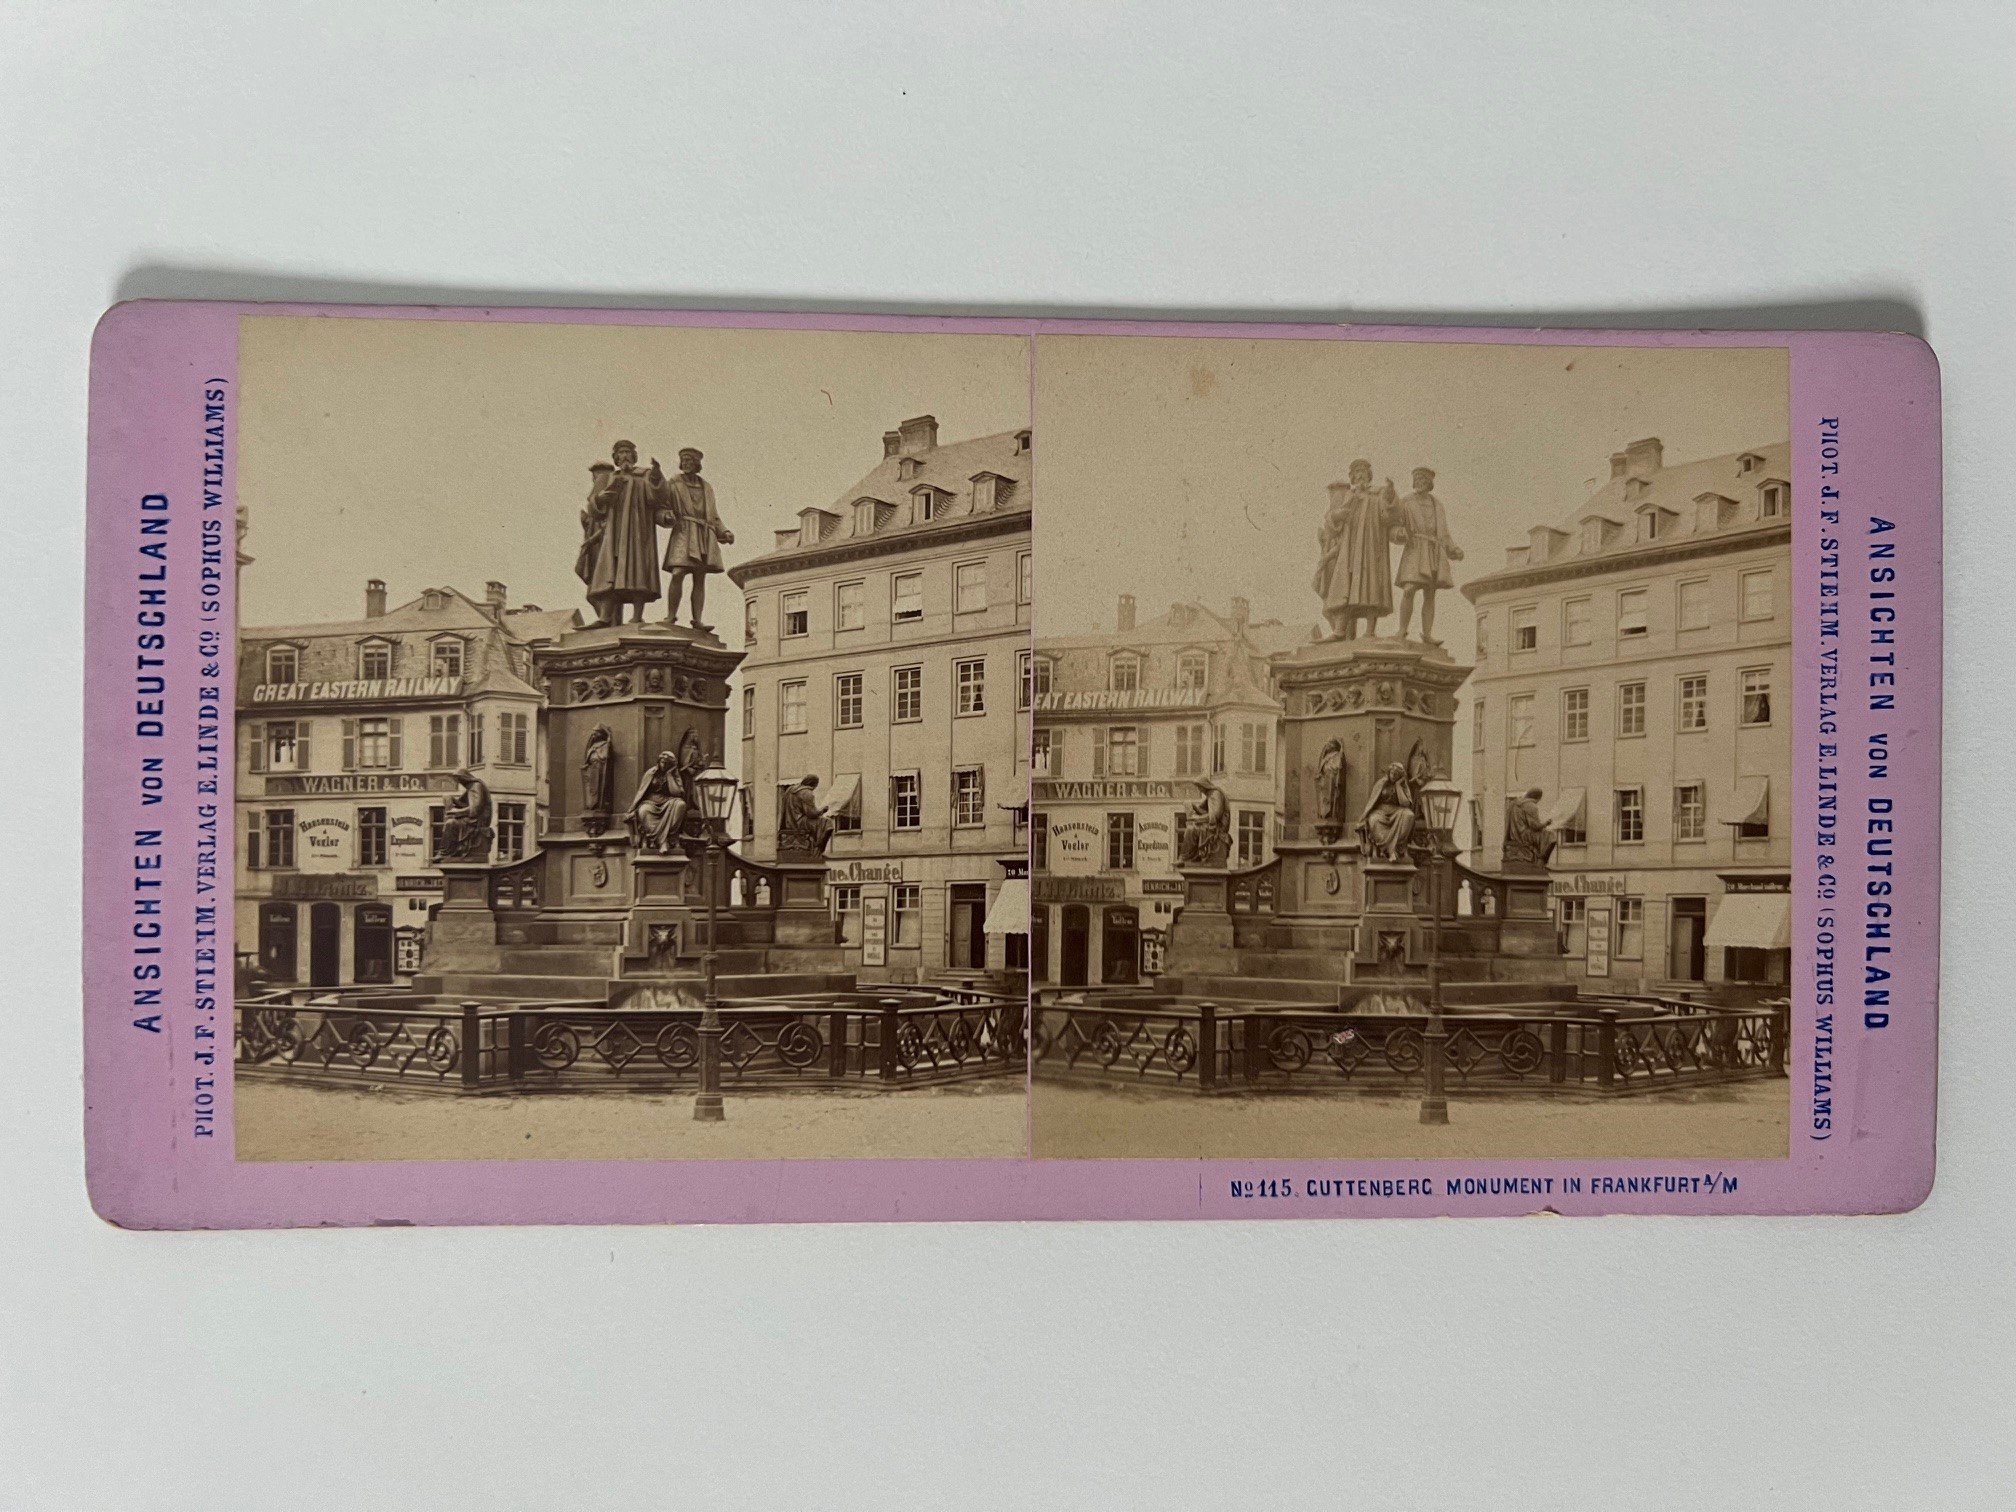 Stereobild, Johann Friedrich Stiehm, Frankfurt, Nr. 115, Guttenberg Monument, ca. 1880. (Taunus-Rhein-Main - Regionalgeschichtliche Sammlung Dr. Stefan Naas CC BY-NC-SA)